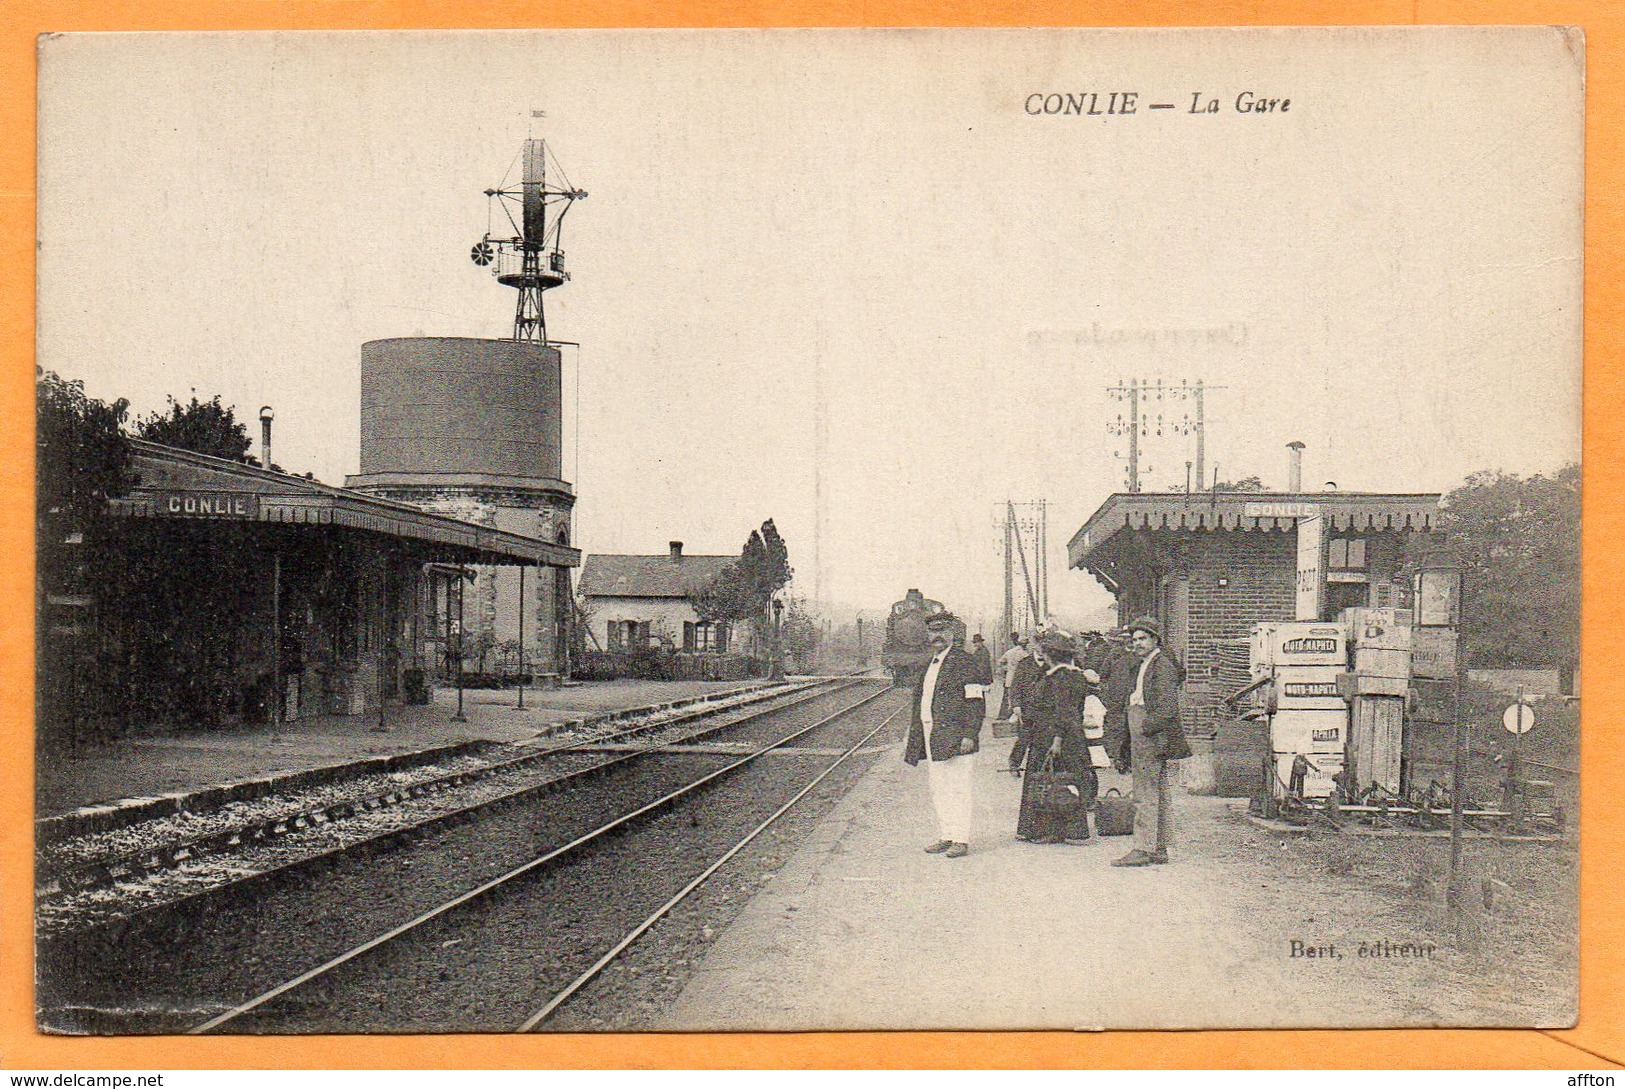 Conlie La Gare France 1910 Postcard - Conlie